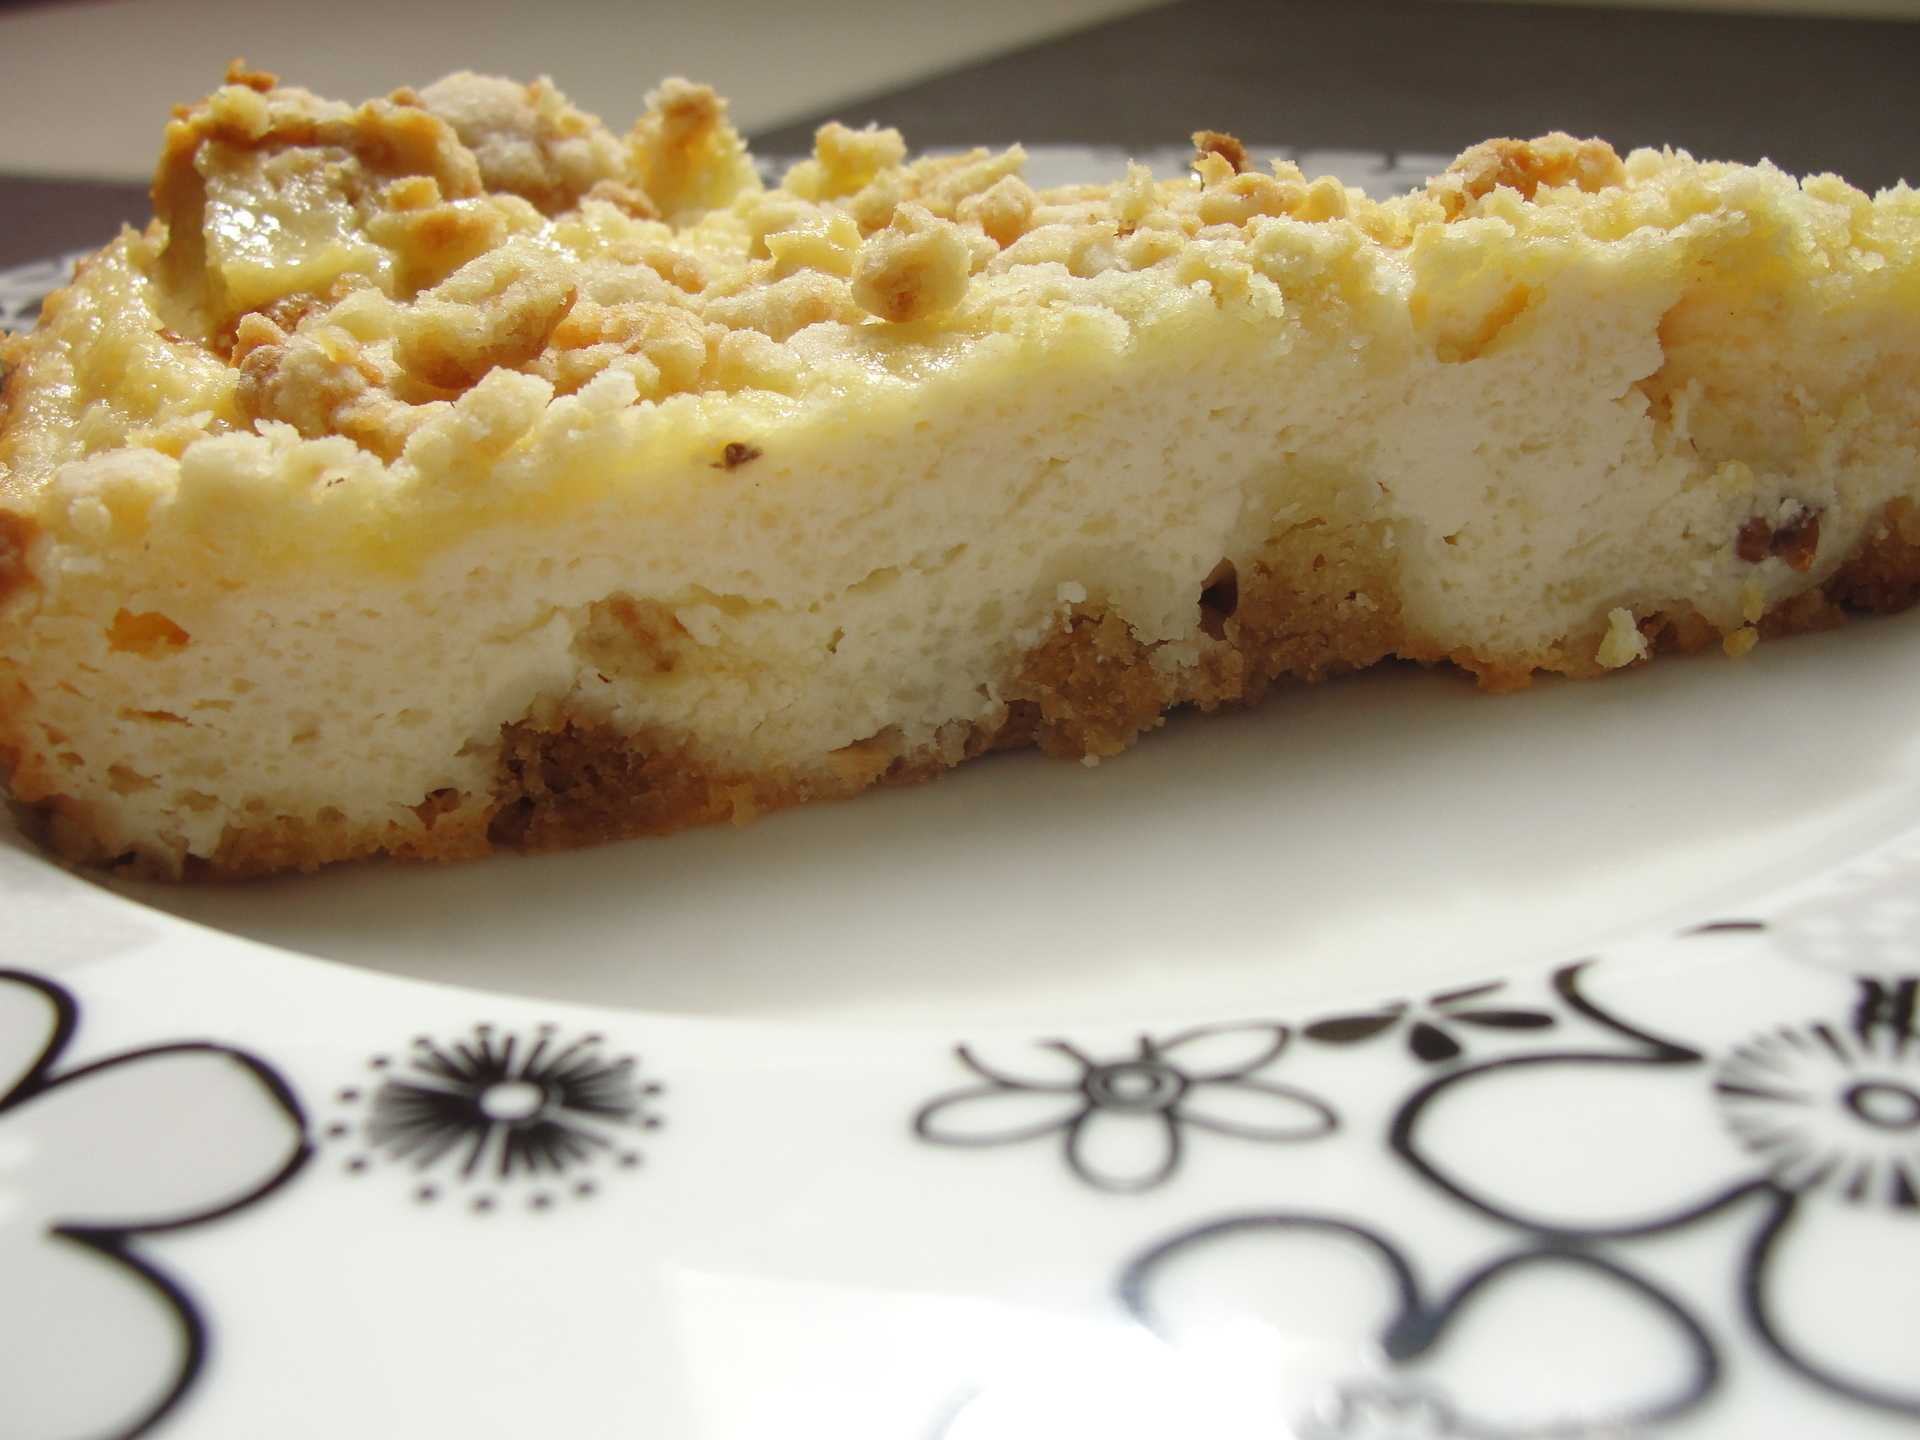 Пирог киш — классические рецепты французского открытого пирога